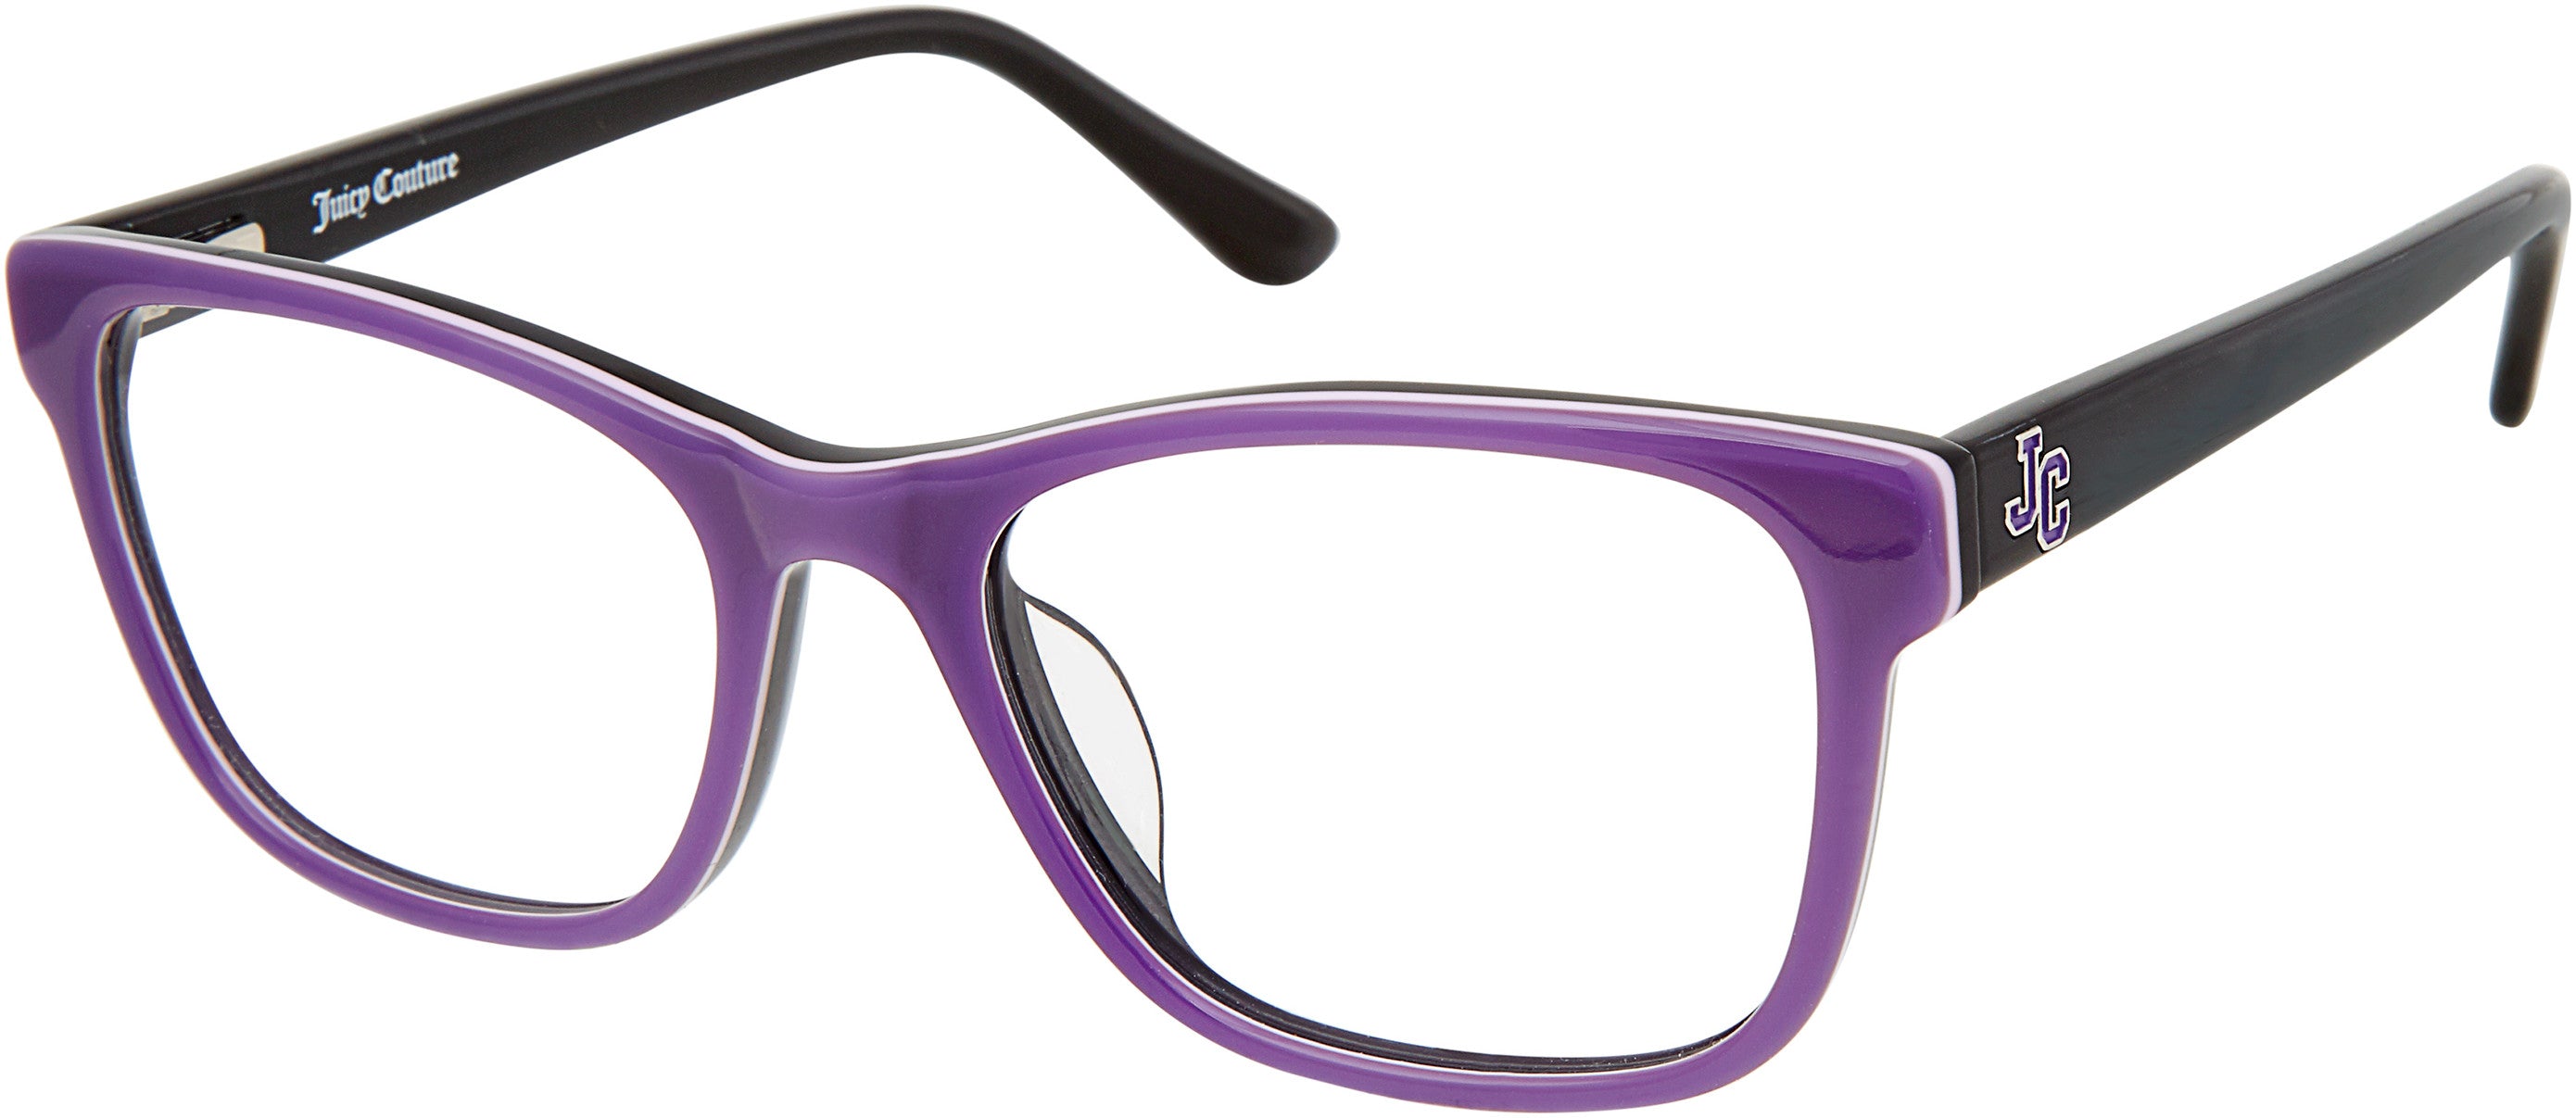 Juicy Couture Juicy 939 Rectangular Eyeglasses 0B3V-0B3V  Violet (00 Demo Lens)